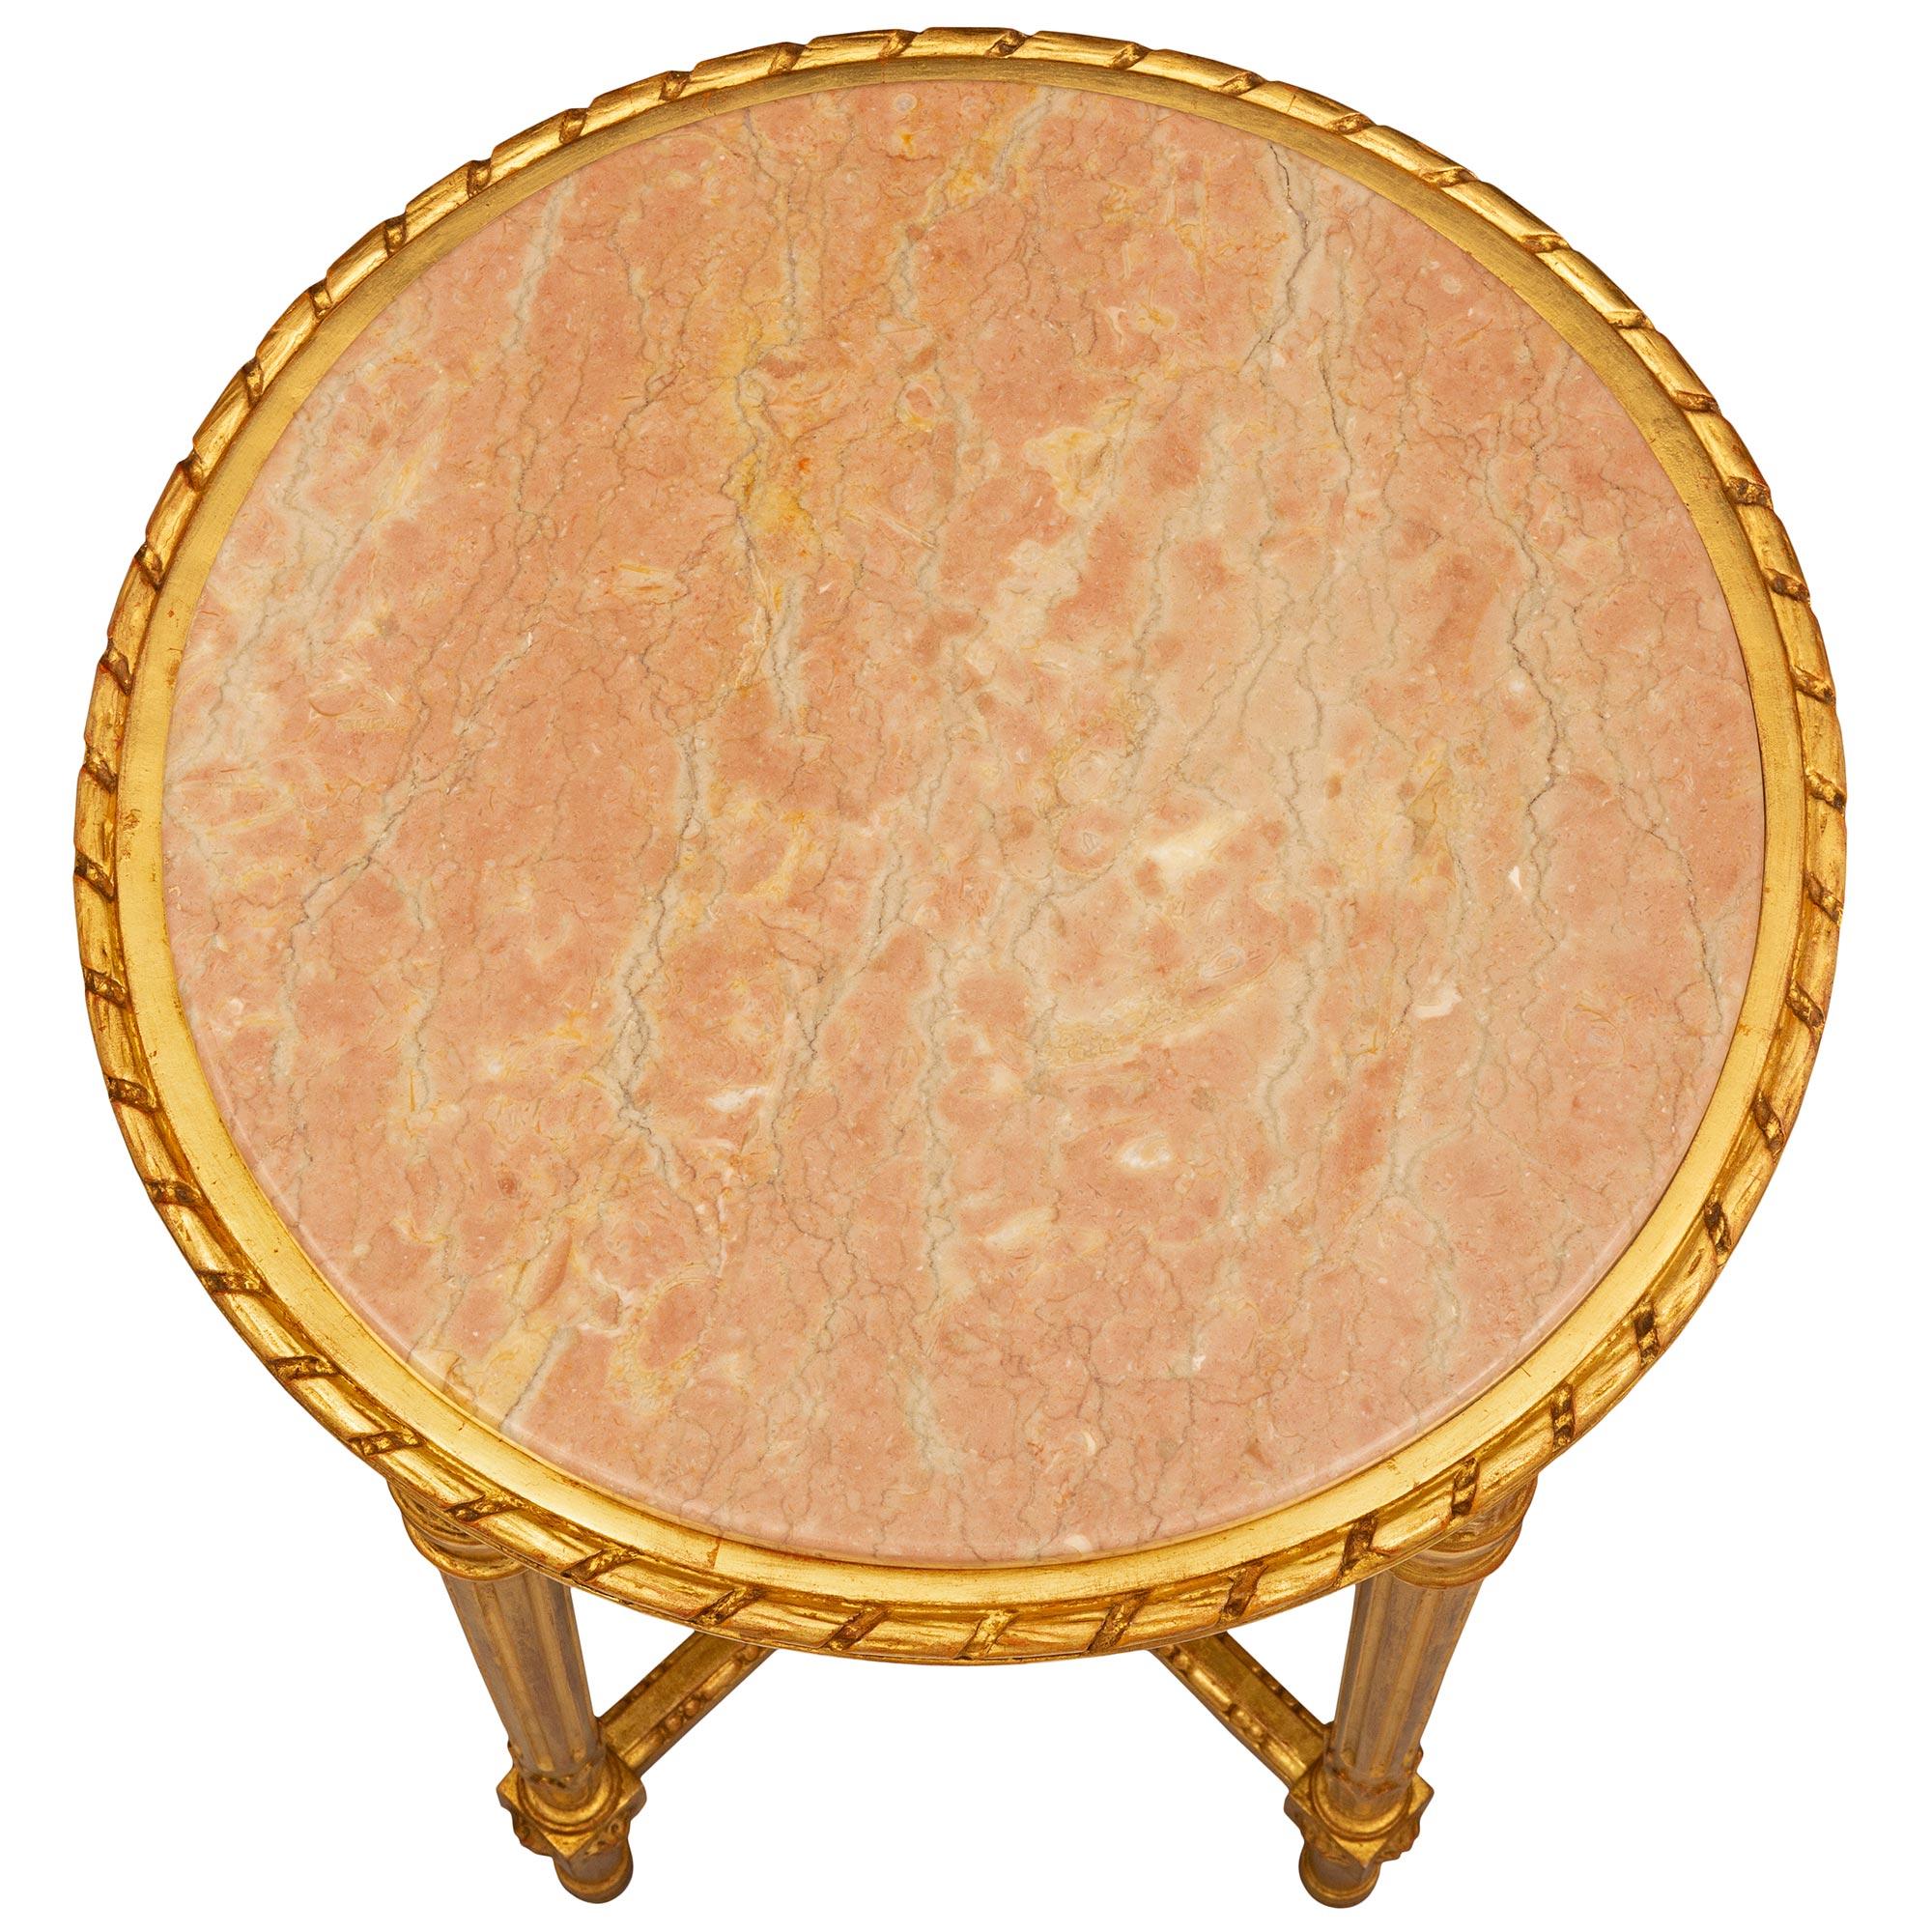 Ein sehr eleganter italienischer Beistelltisch aus dem Louis XVI Jahrhundert aus vergoldetem Holz und Rose Phocéen-Marmor. Der runde Tisch steht auf schlanken, kreisrunden, konisch zulaufenden, kannelierten Beinen mit hübschen, topieförmigen Füßen